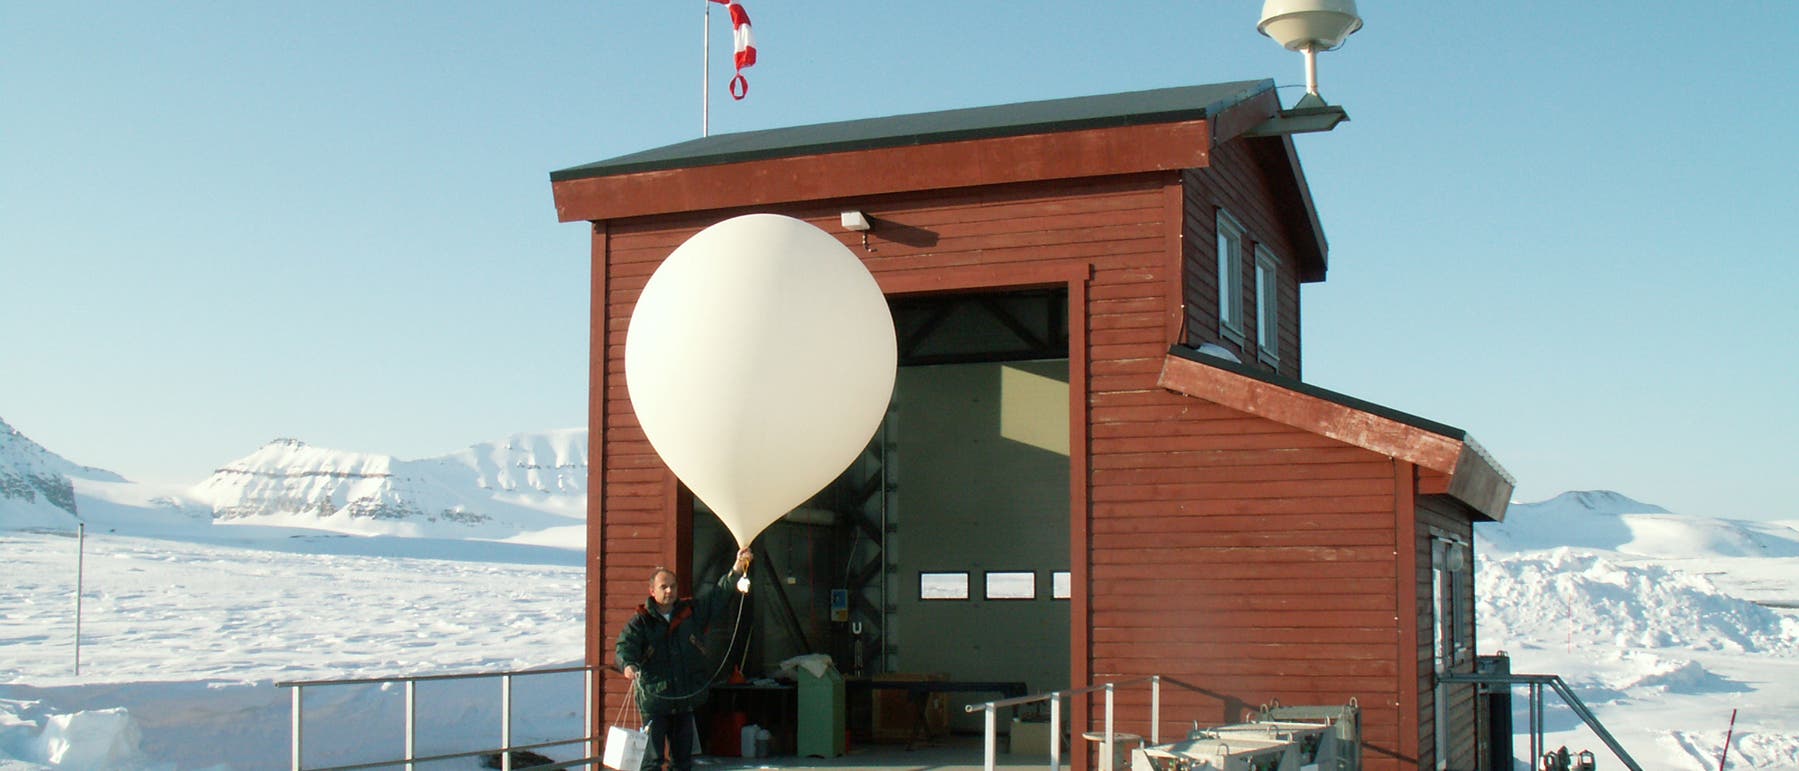 Atmosphärenforschung mit Ballonen